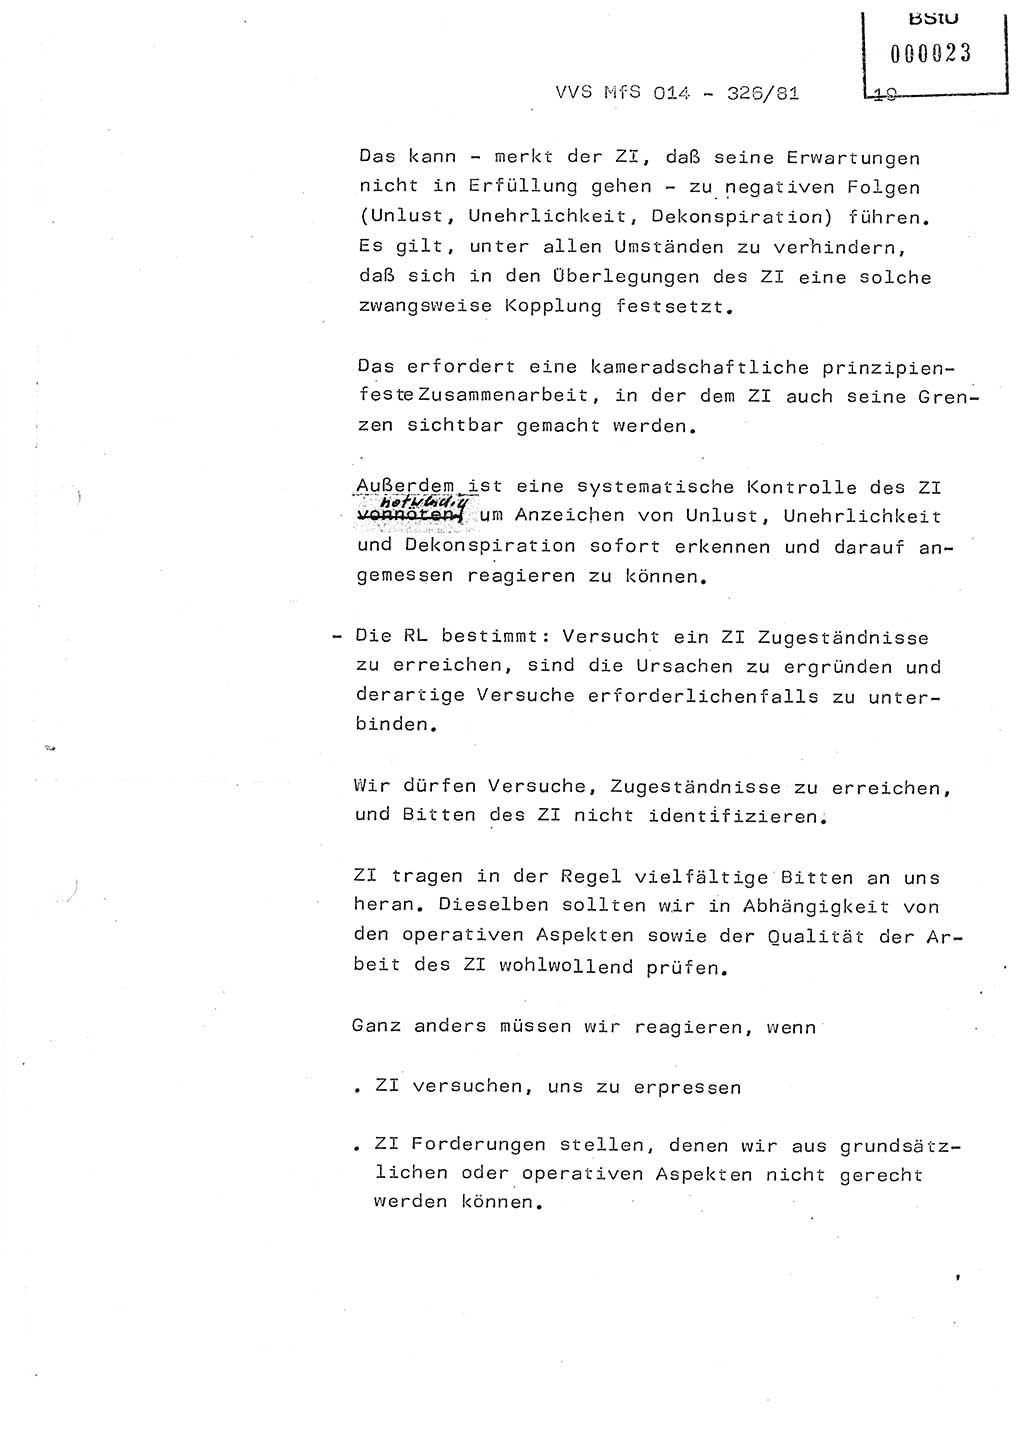 Thesen zum Einführungsvortrag für die Schulung zur Richtlinie Nr. 2/81 [zur Arbeit mit Zelleninformatoren (ZI)] des Genossen Minister (Generaloberst Erich Mielke), Ministerium für Staatssicherheit (MfS) [Deutsche Demokratische Republik (DDR)], Hauptabteilung (HA) Ⅸ, Vertrauliche Verschlußsache (VVS) 014-326/81, Berlin 1981, Seite 19 (Th. Sch. RL 2/81 MfS DDR HA Ⅸ VVS 014-326/81 1981, S. 19)